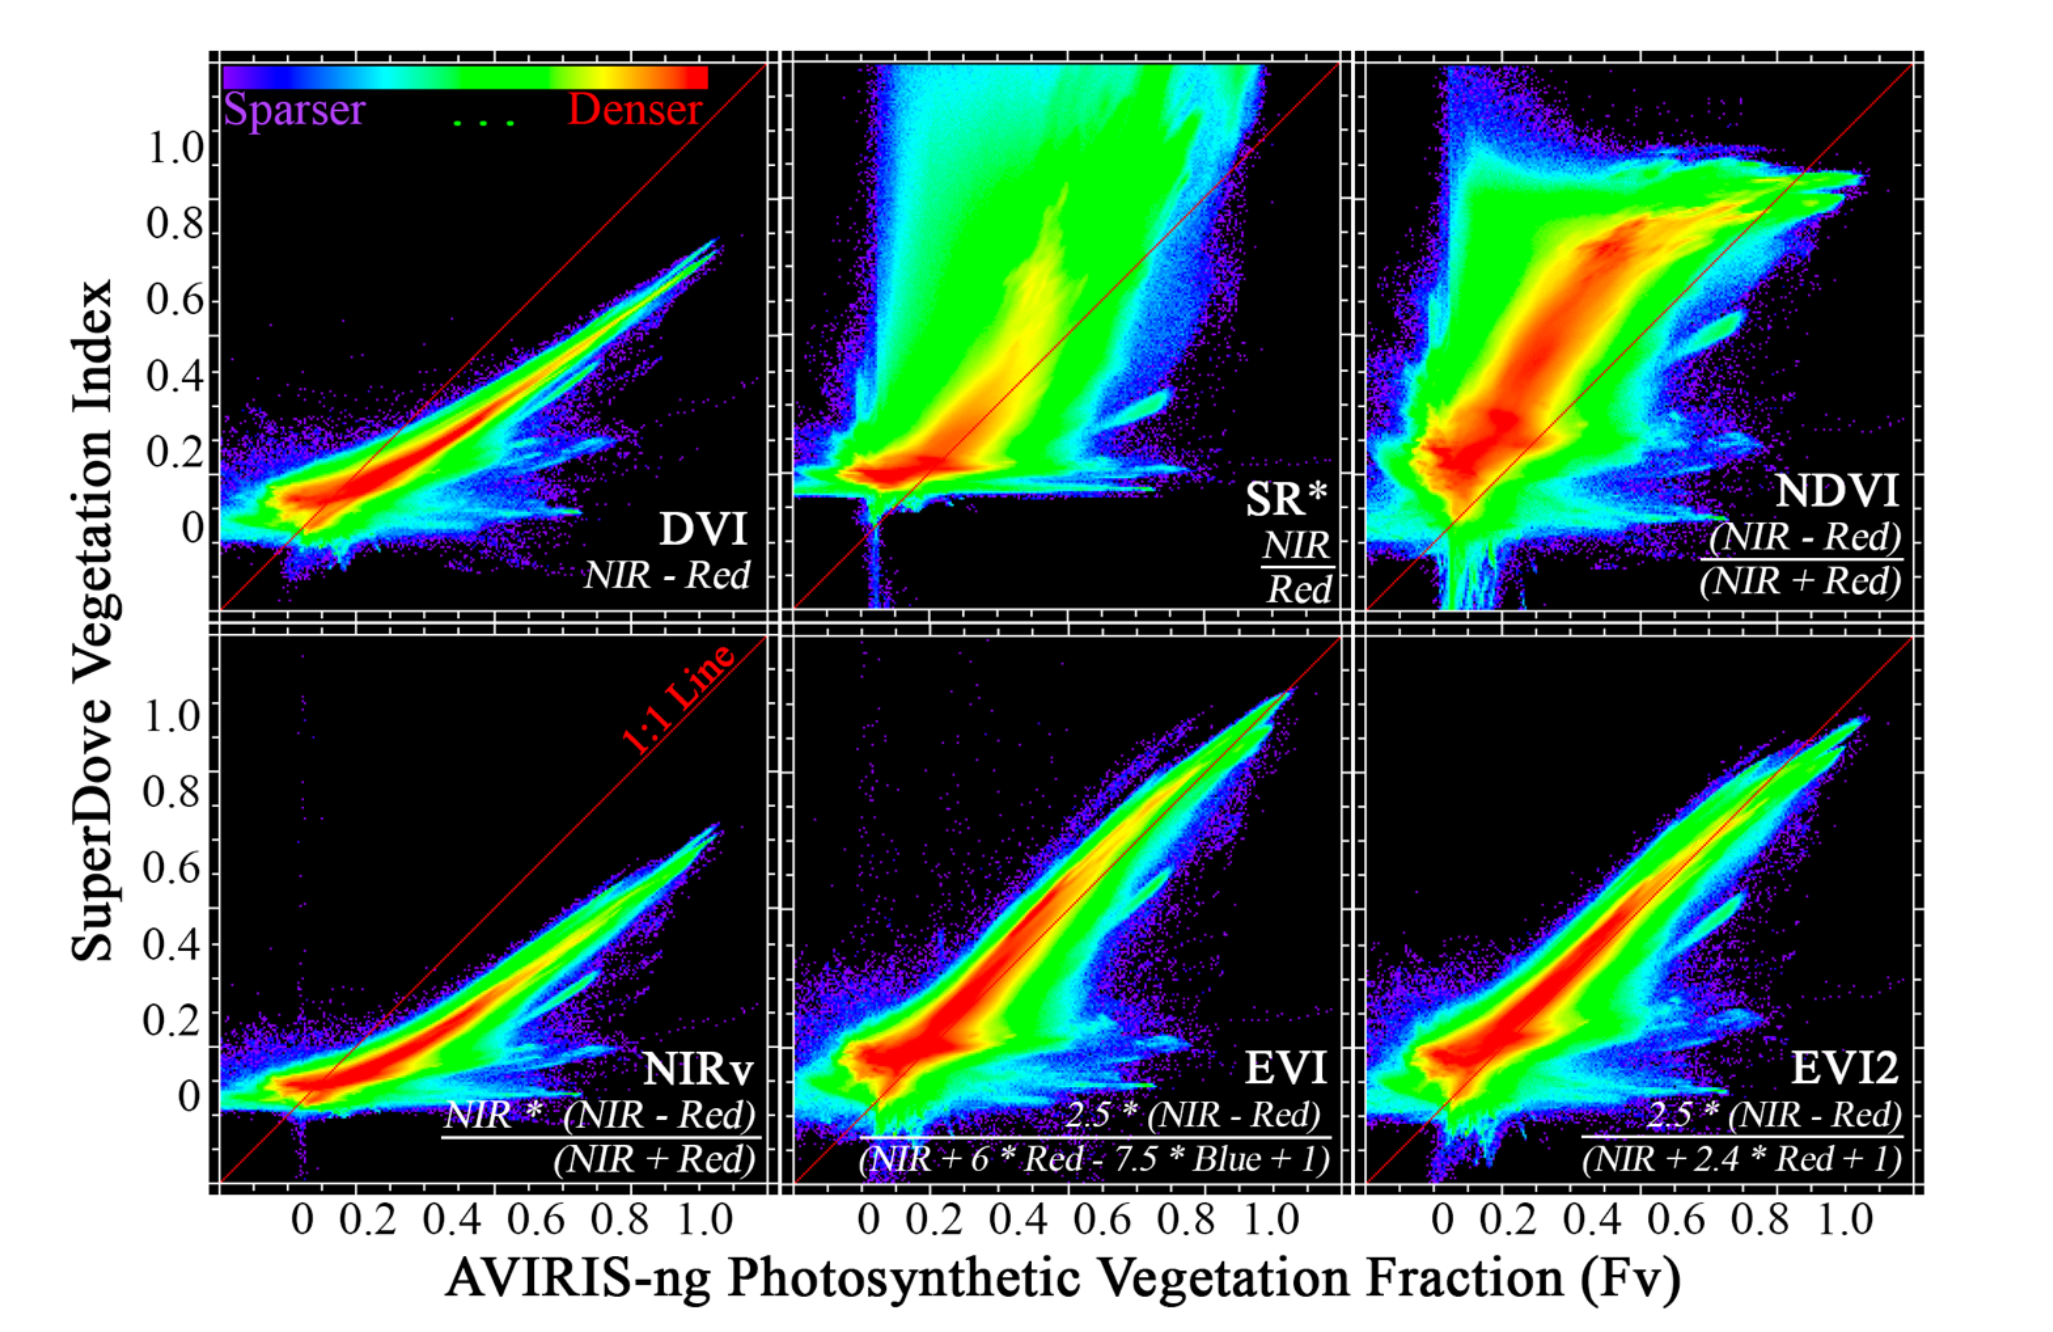 Vincule índices de vegetación multiespectrales comunes a modelos de mezcla hiperespectral